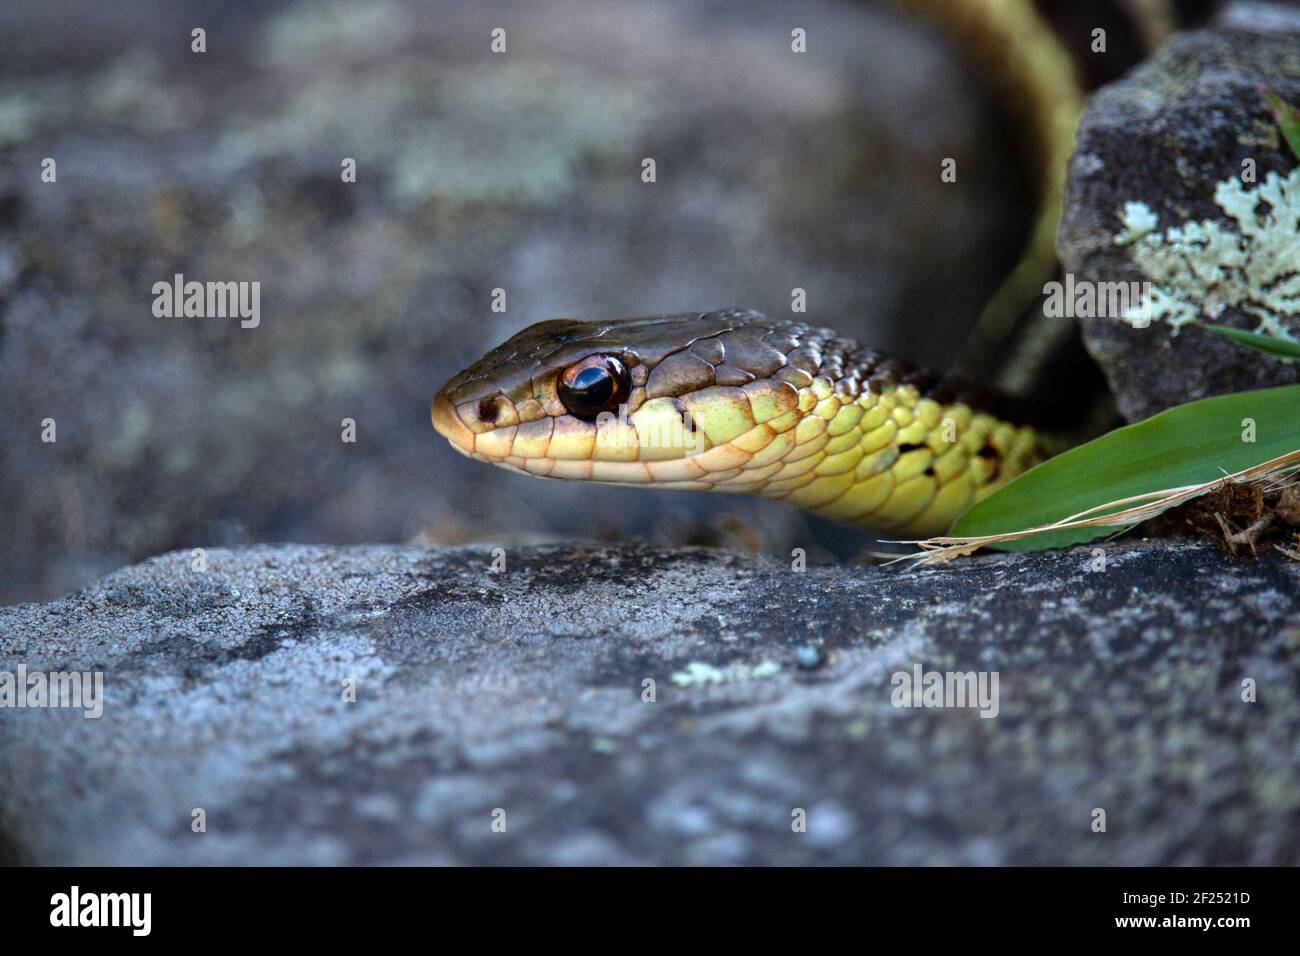 La serpiente común no-posinous de la garter es problemática la serpiente más común encontrada alrededor de hogares y jardines. Foto de stock